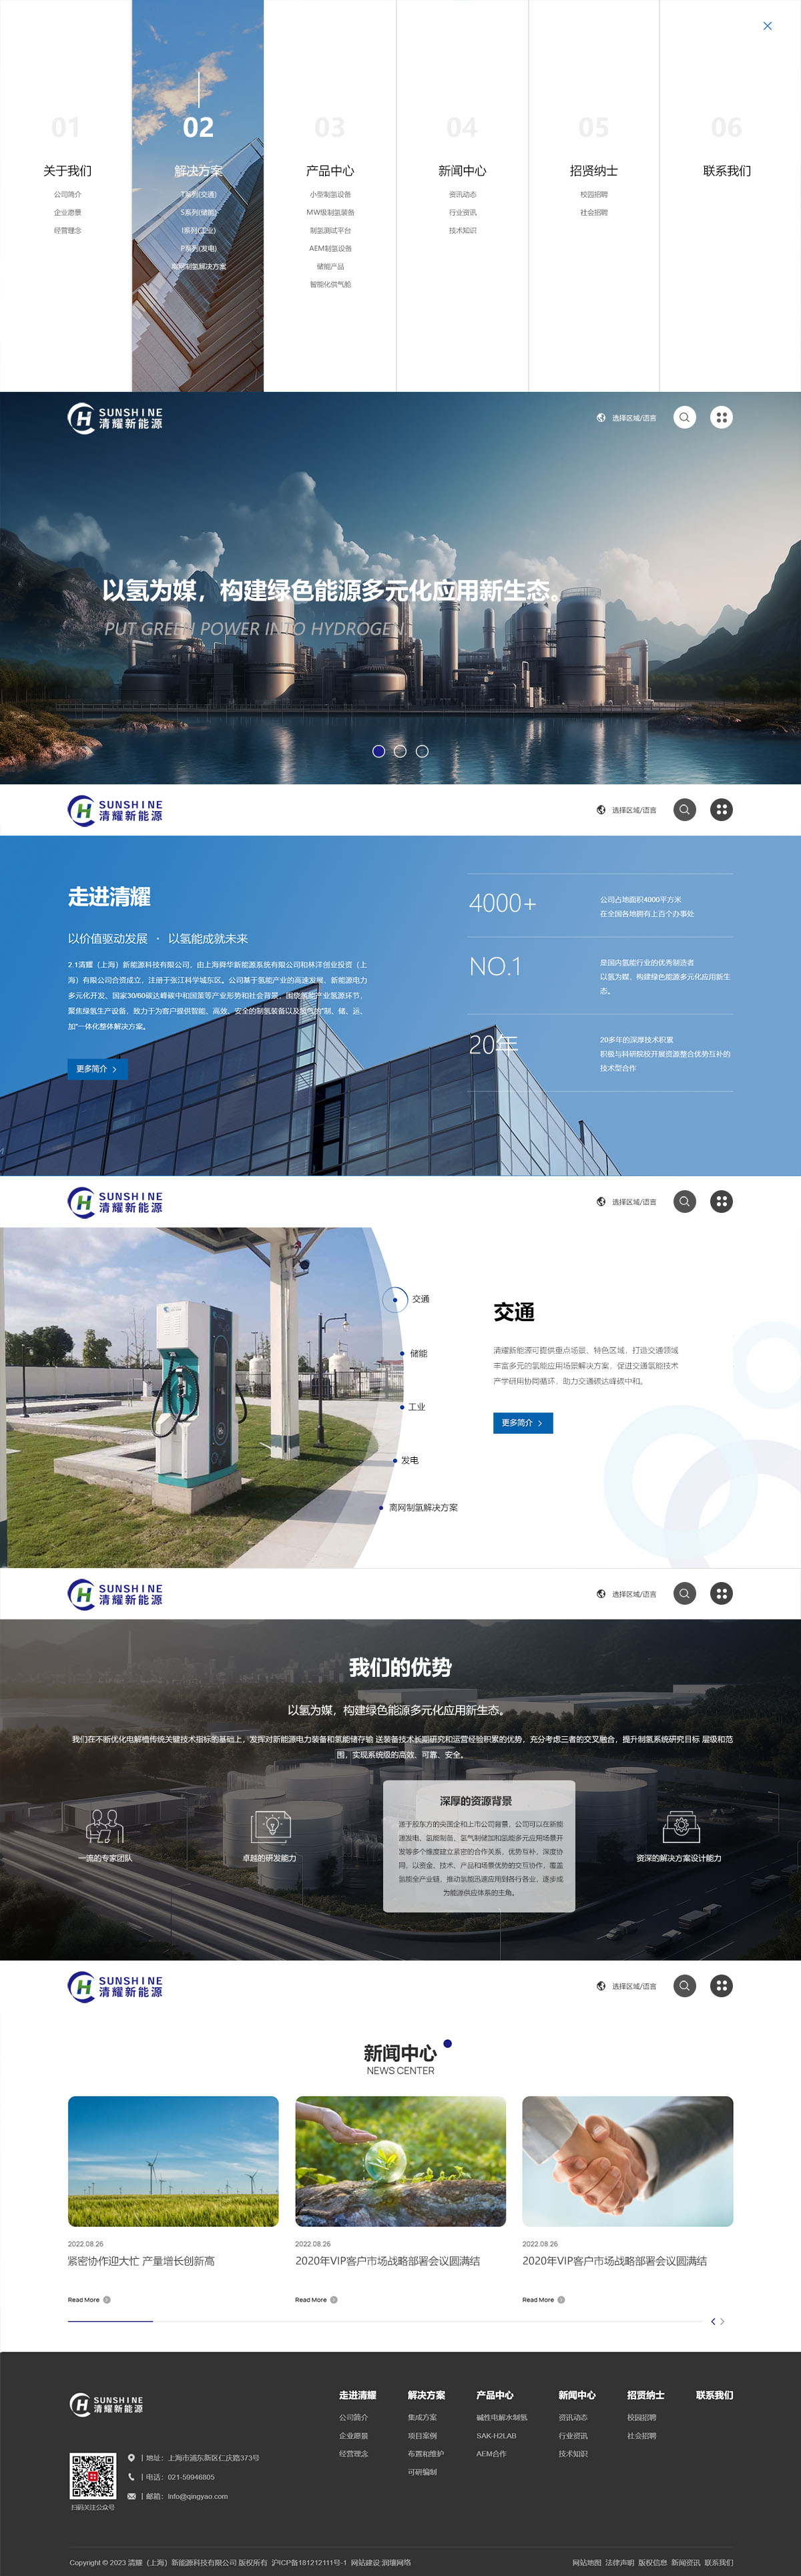 上海网站设计,网站设计制作开发